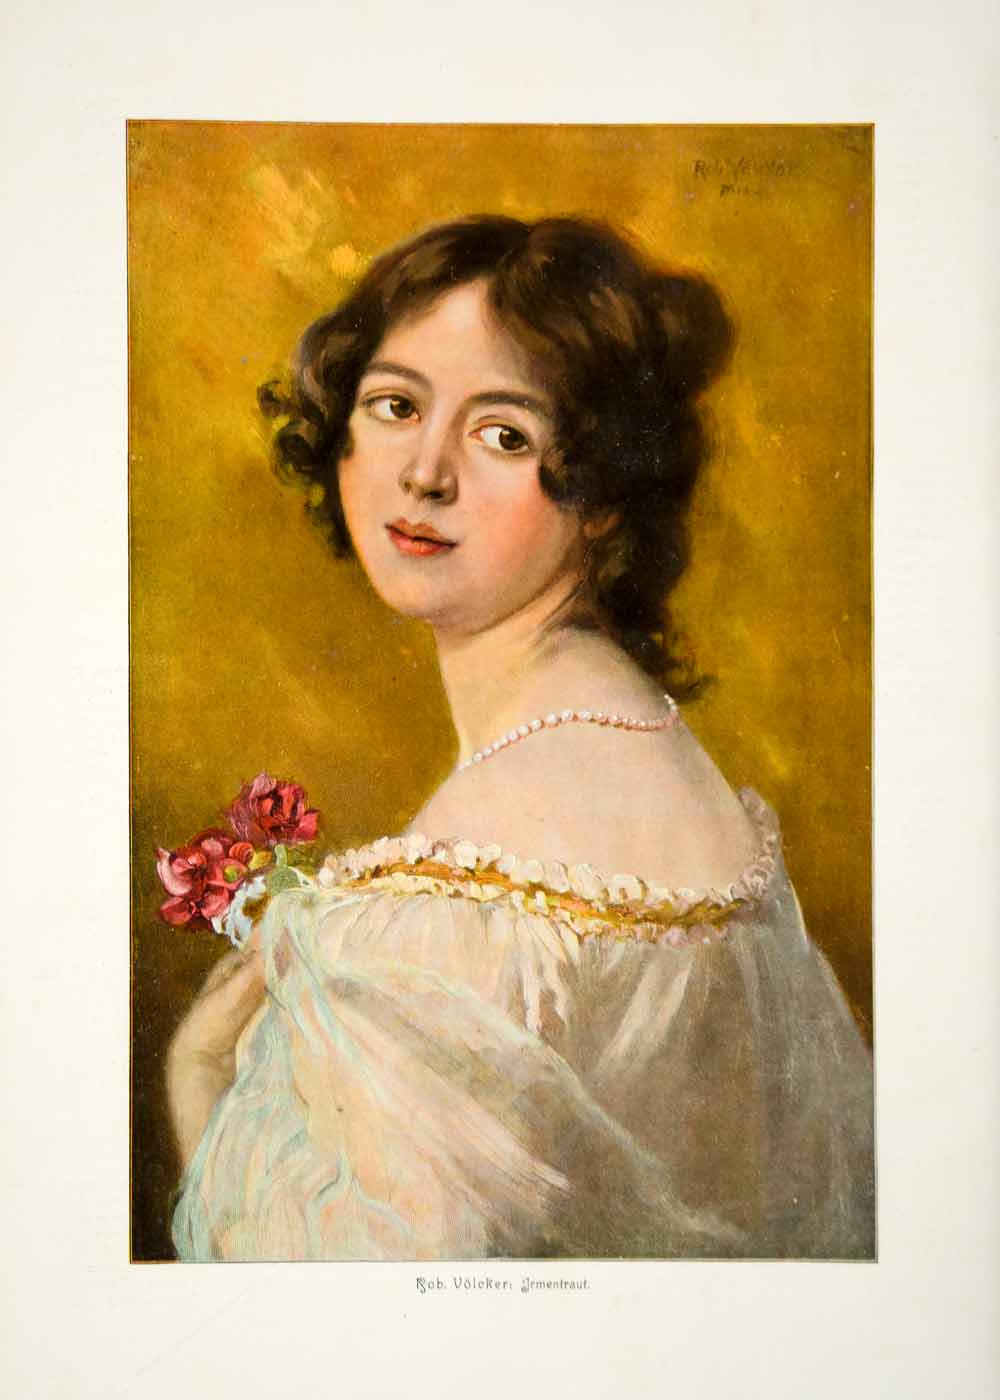 1907 Photolithograph Rob Volcker Irmentraut Portrait Woman Bouquet Back MK2